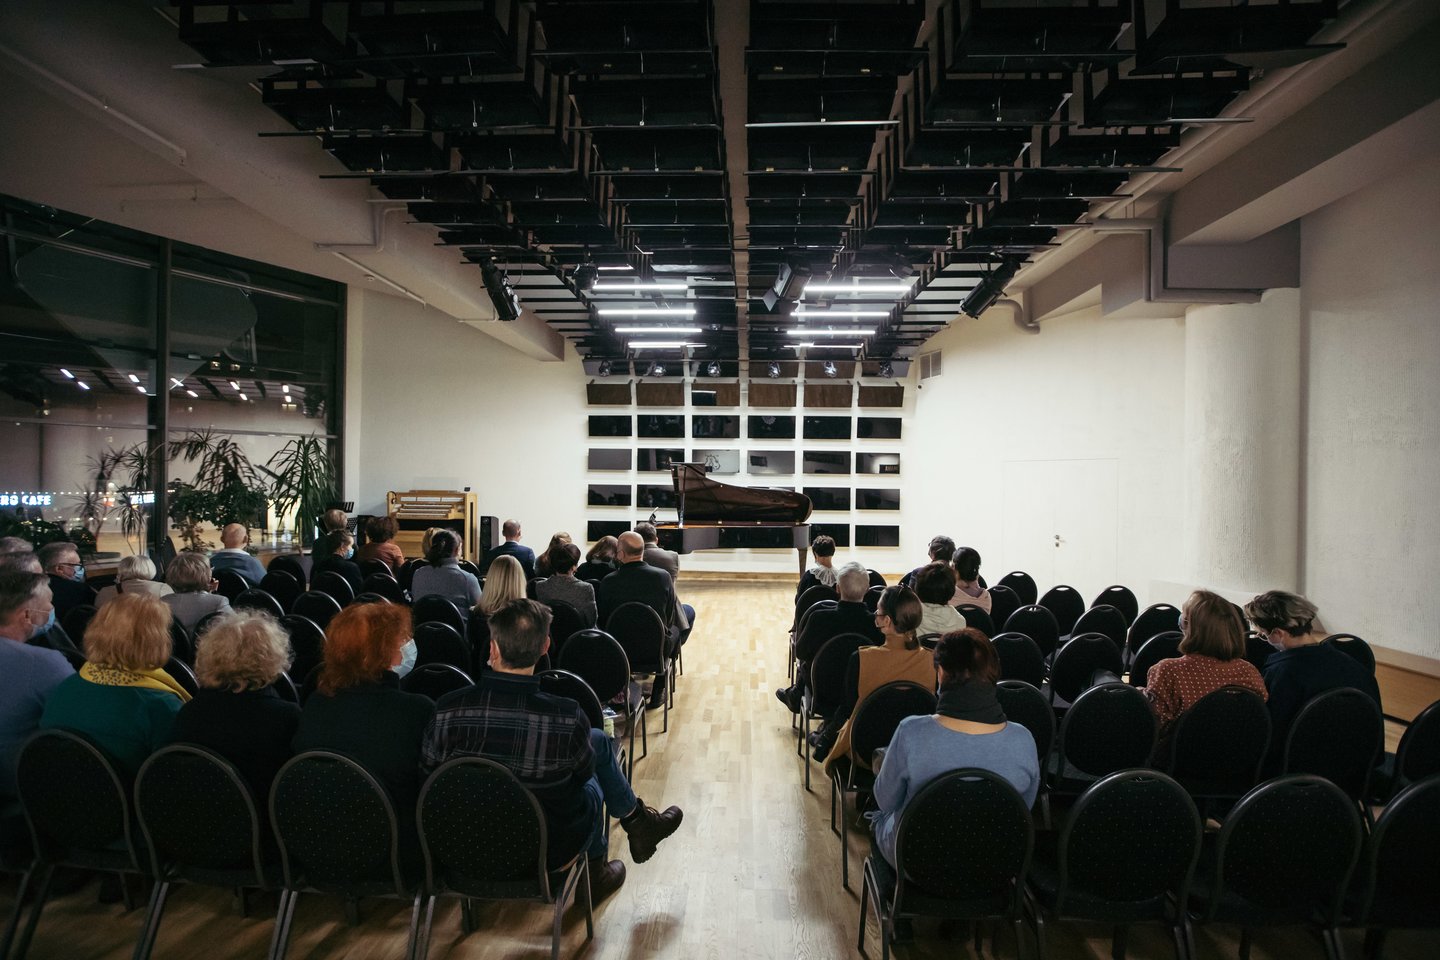  Prie „Organum“ salės lubų pritvirtintų pianisto kėdučių paviršiai blizga kaip veidrodžiai, o kompozicija prilygsta meno instaliacijai. <br> M.Bartaševičiaus nuotr.